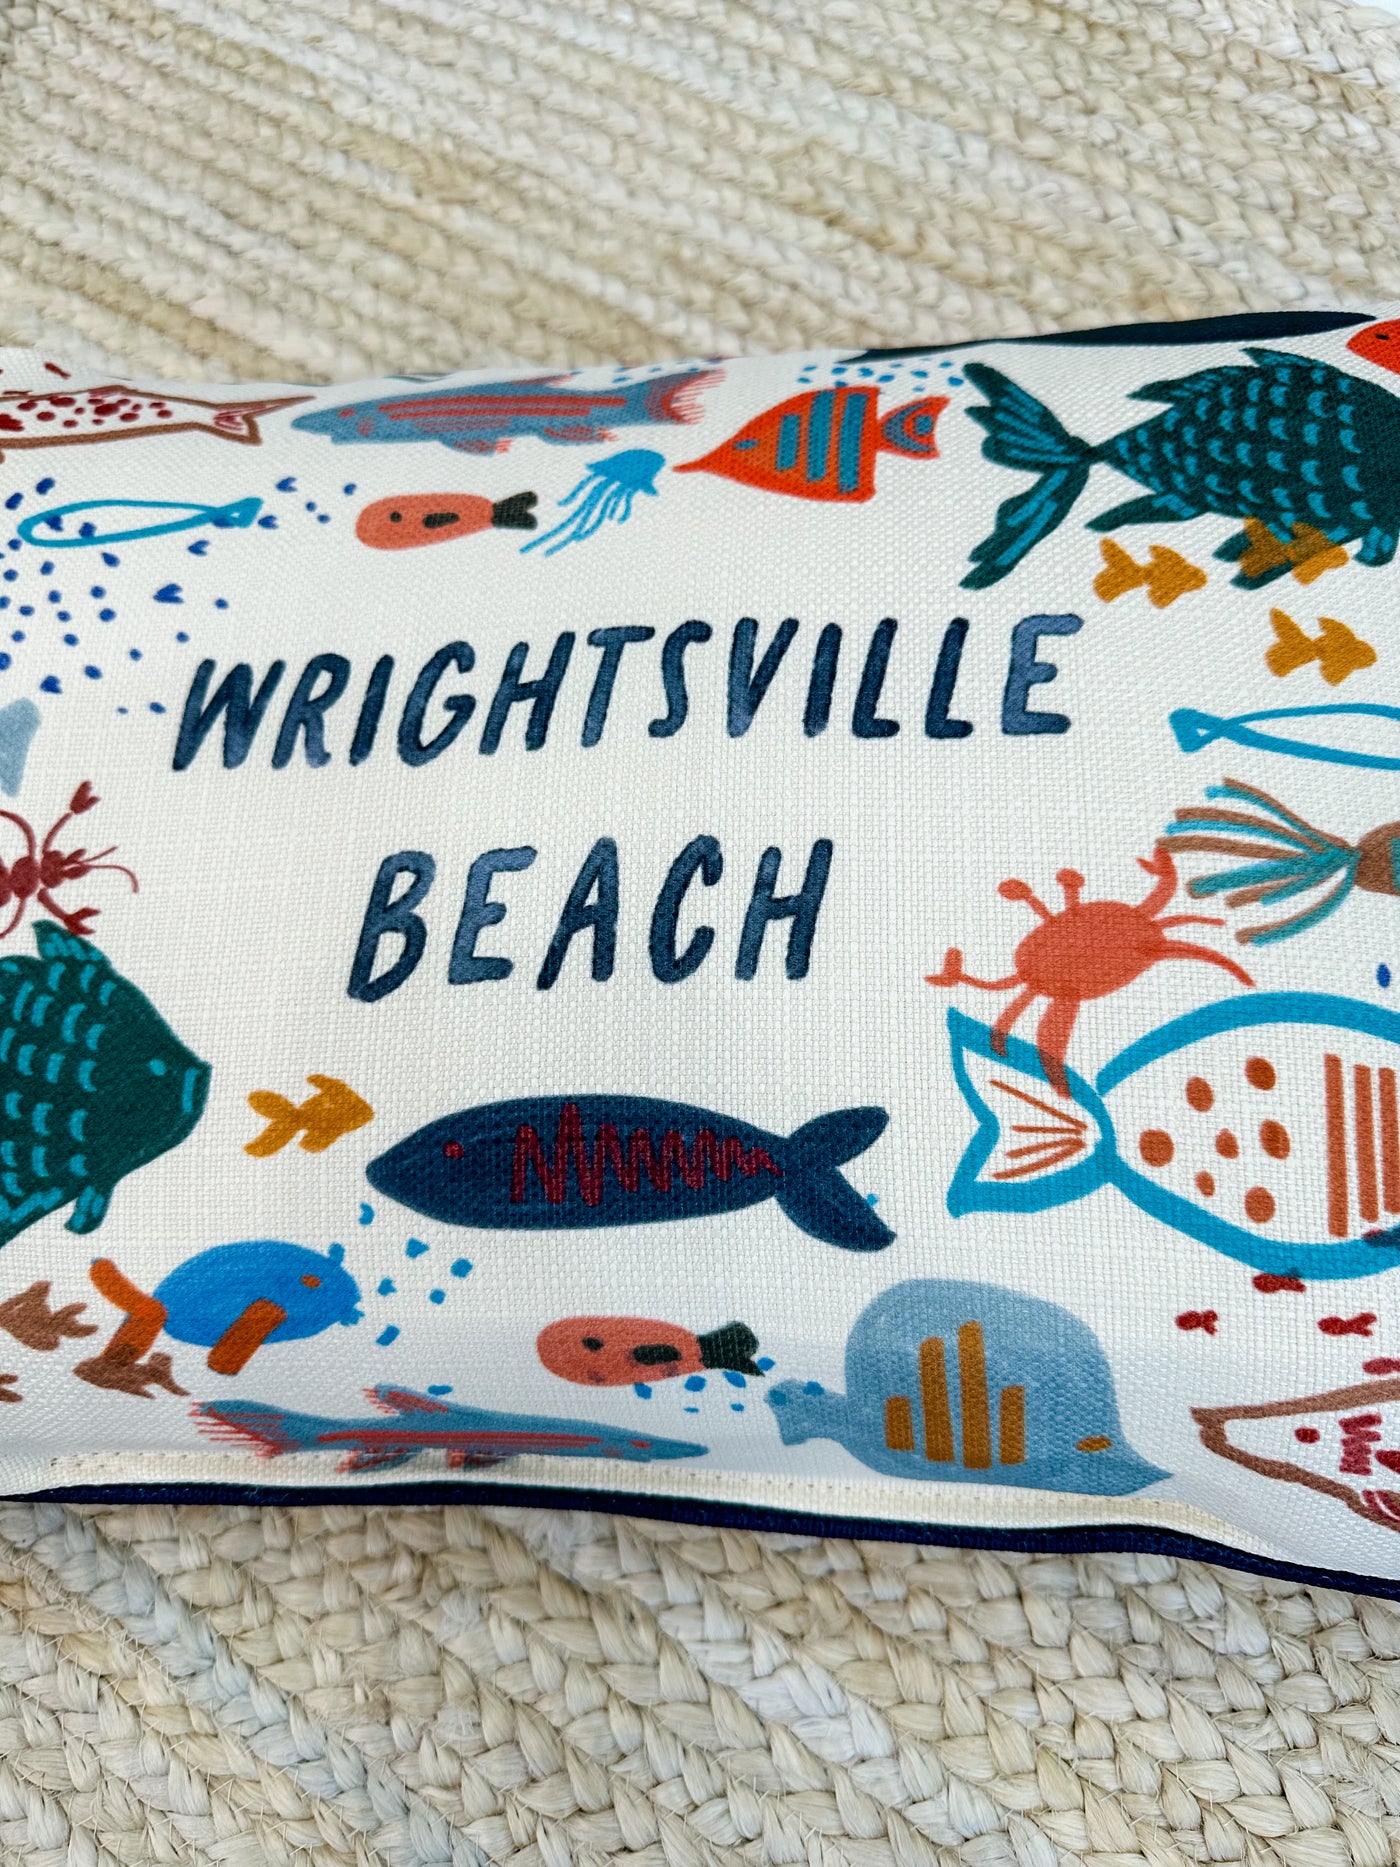 Swishy Fishy "Wrightsville Beach" Lumbar Pillow